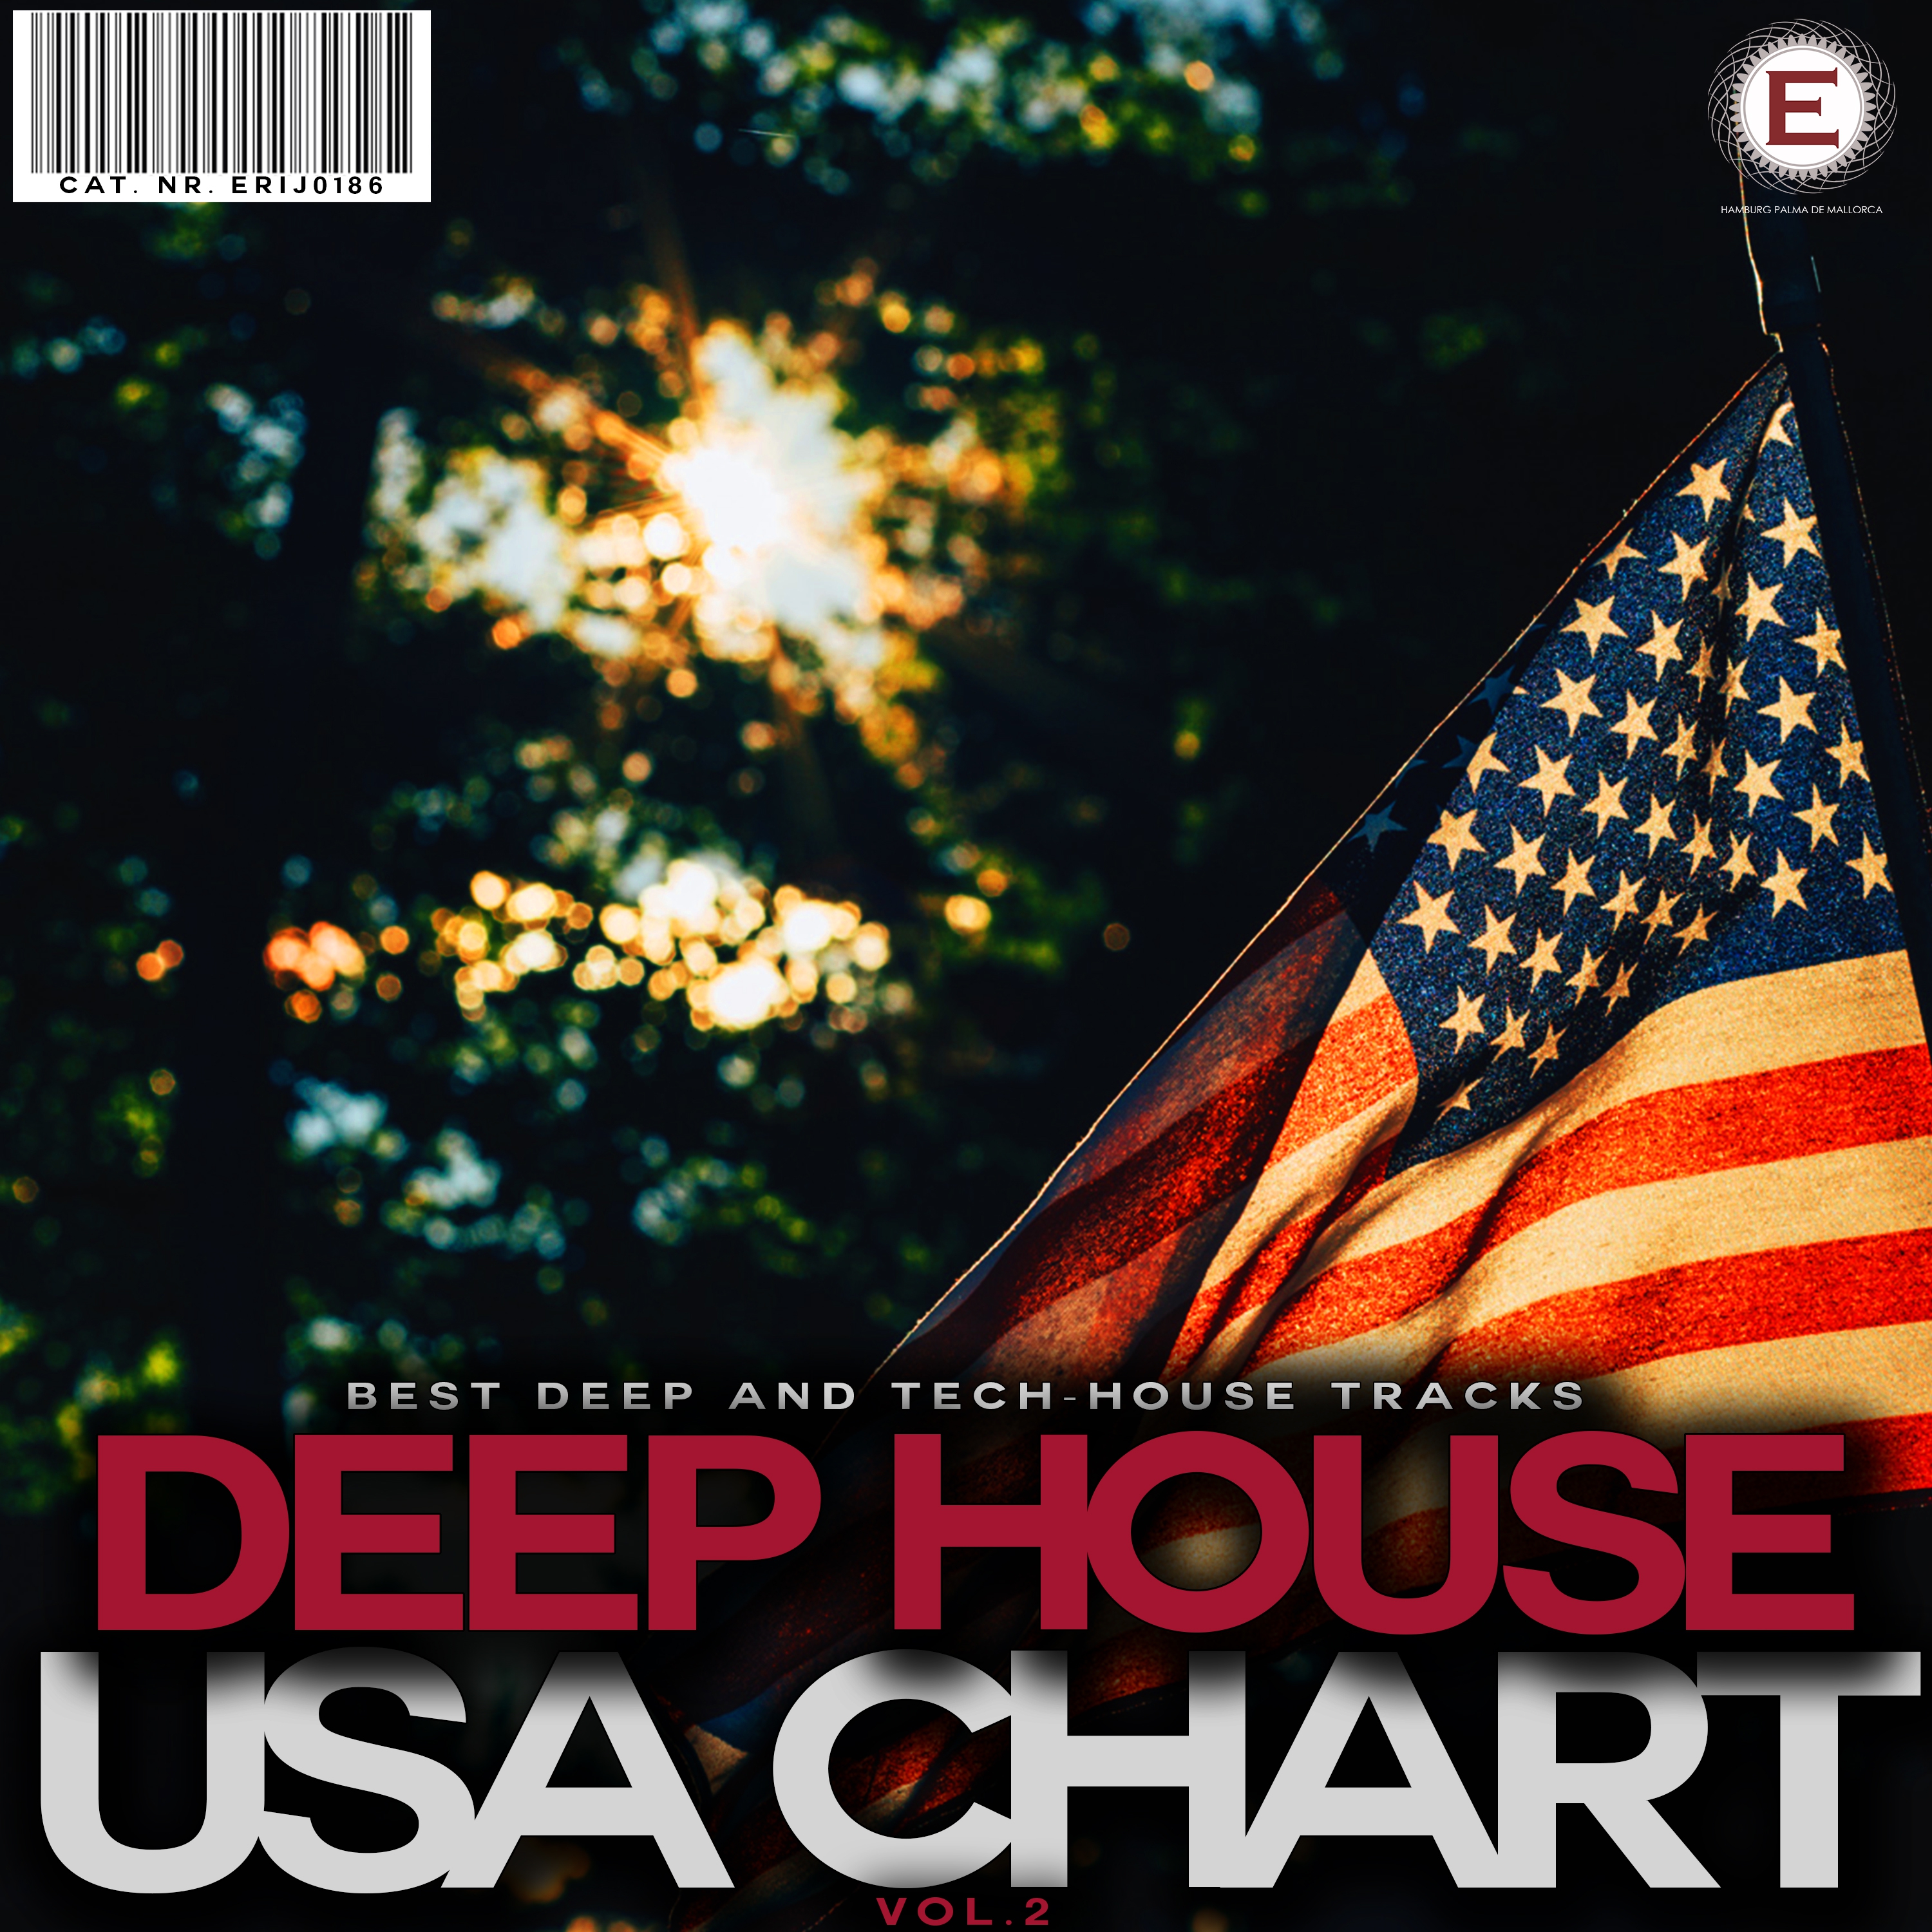 Deep House USA Chart, Vol. 2